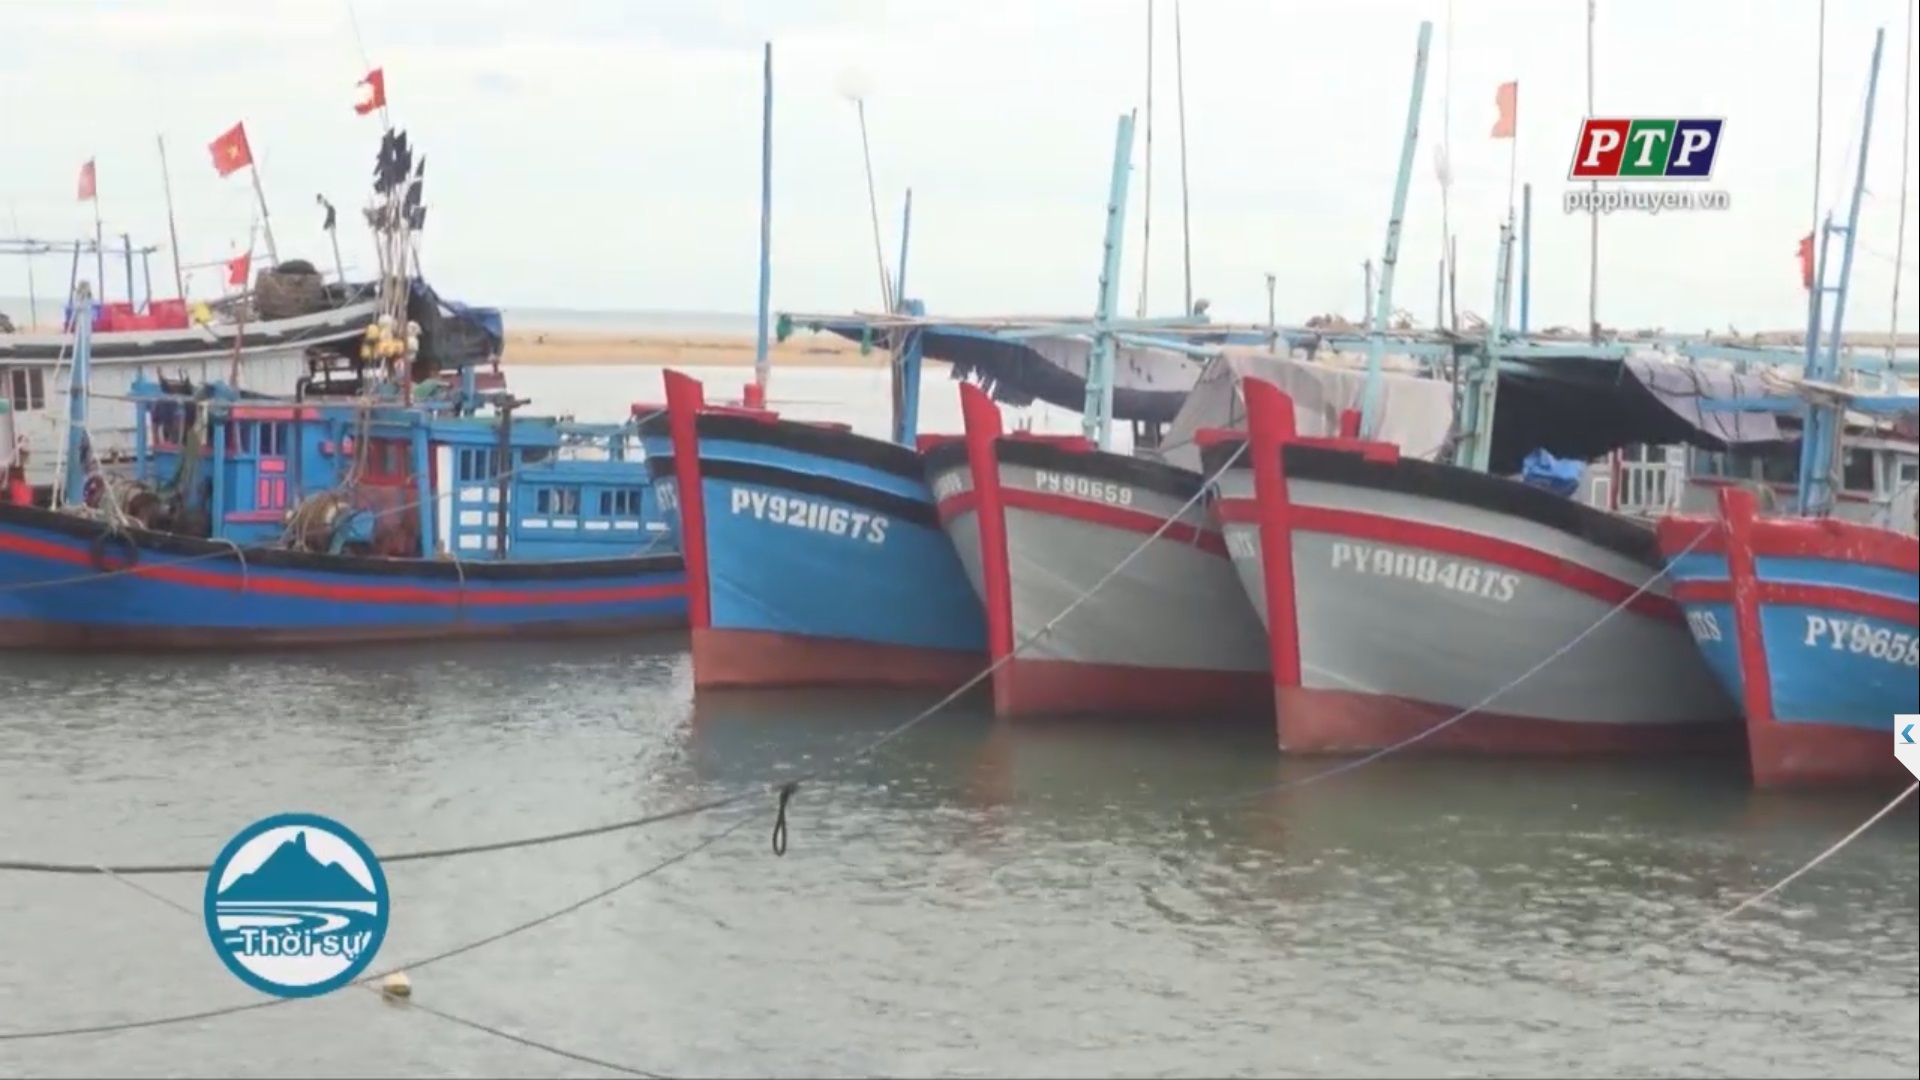 Tàu thuyền của ngư dân Phú Yên đã tìm được nơi tránh trú an toàn